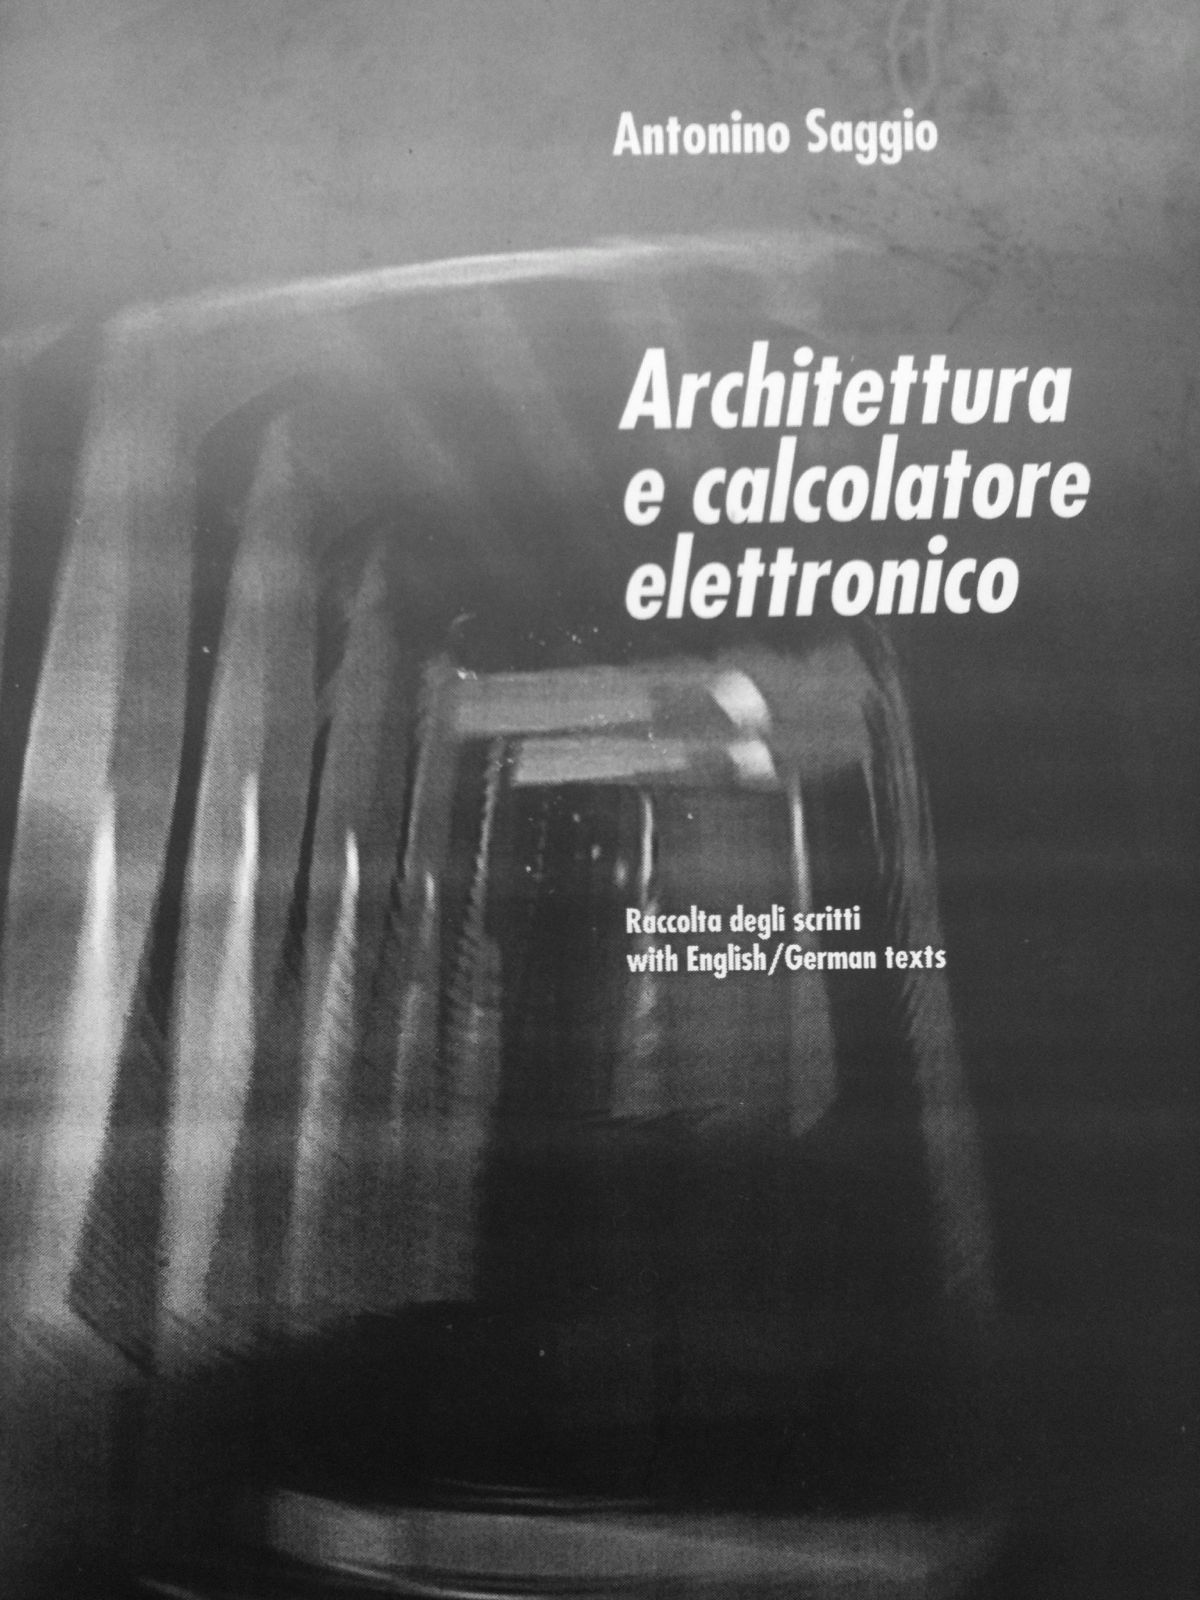 copertina di una raccolta didattica dei primi scritti sul computer